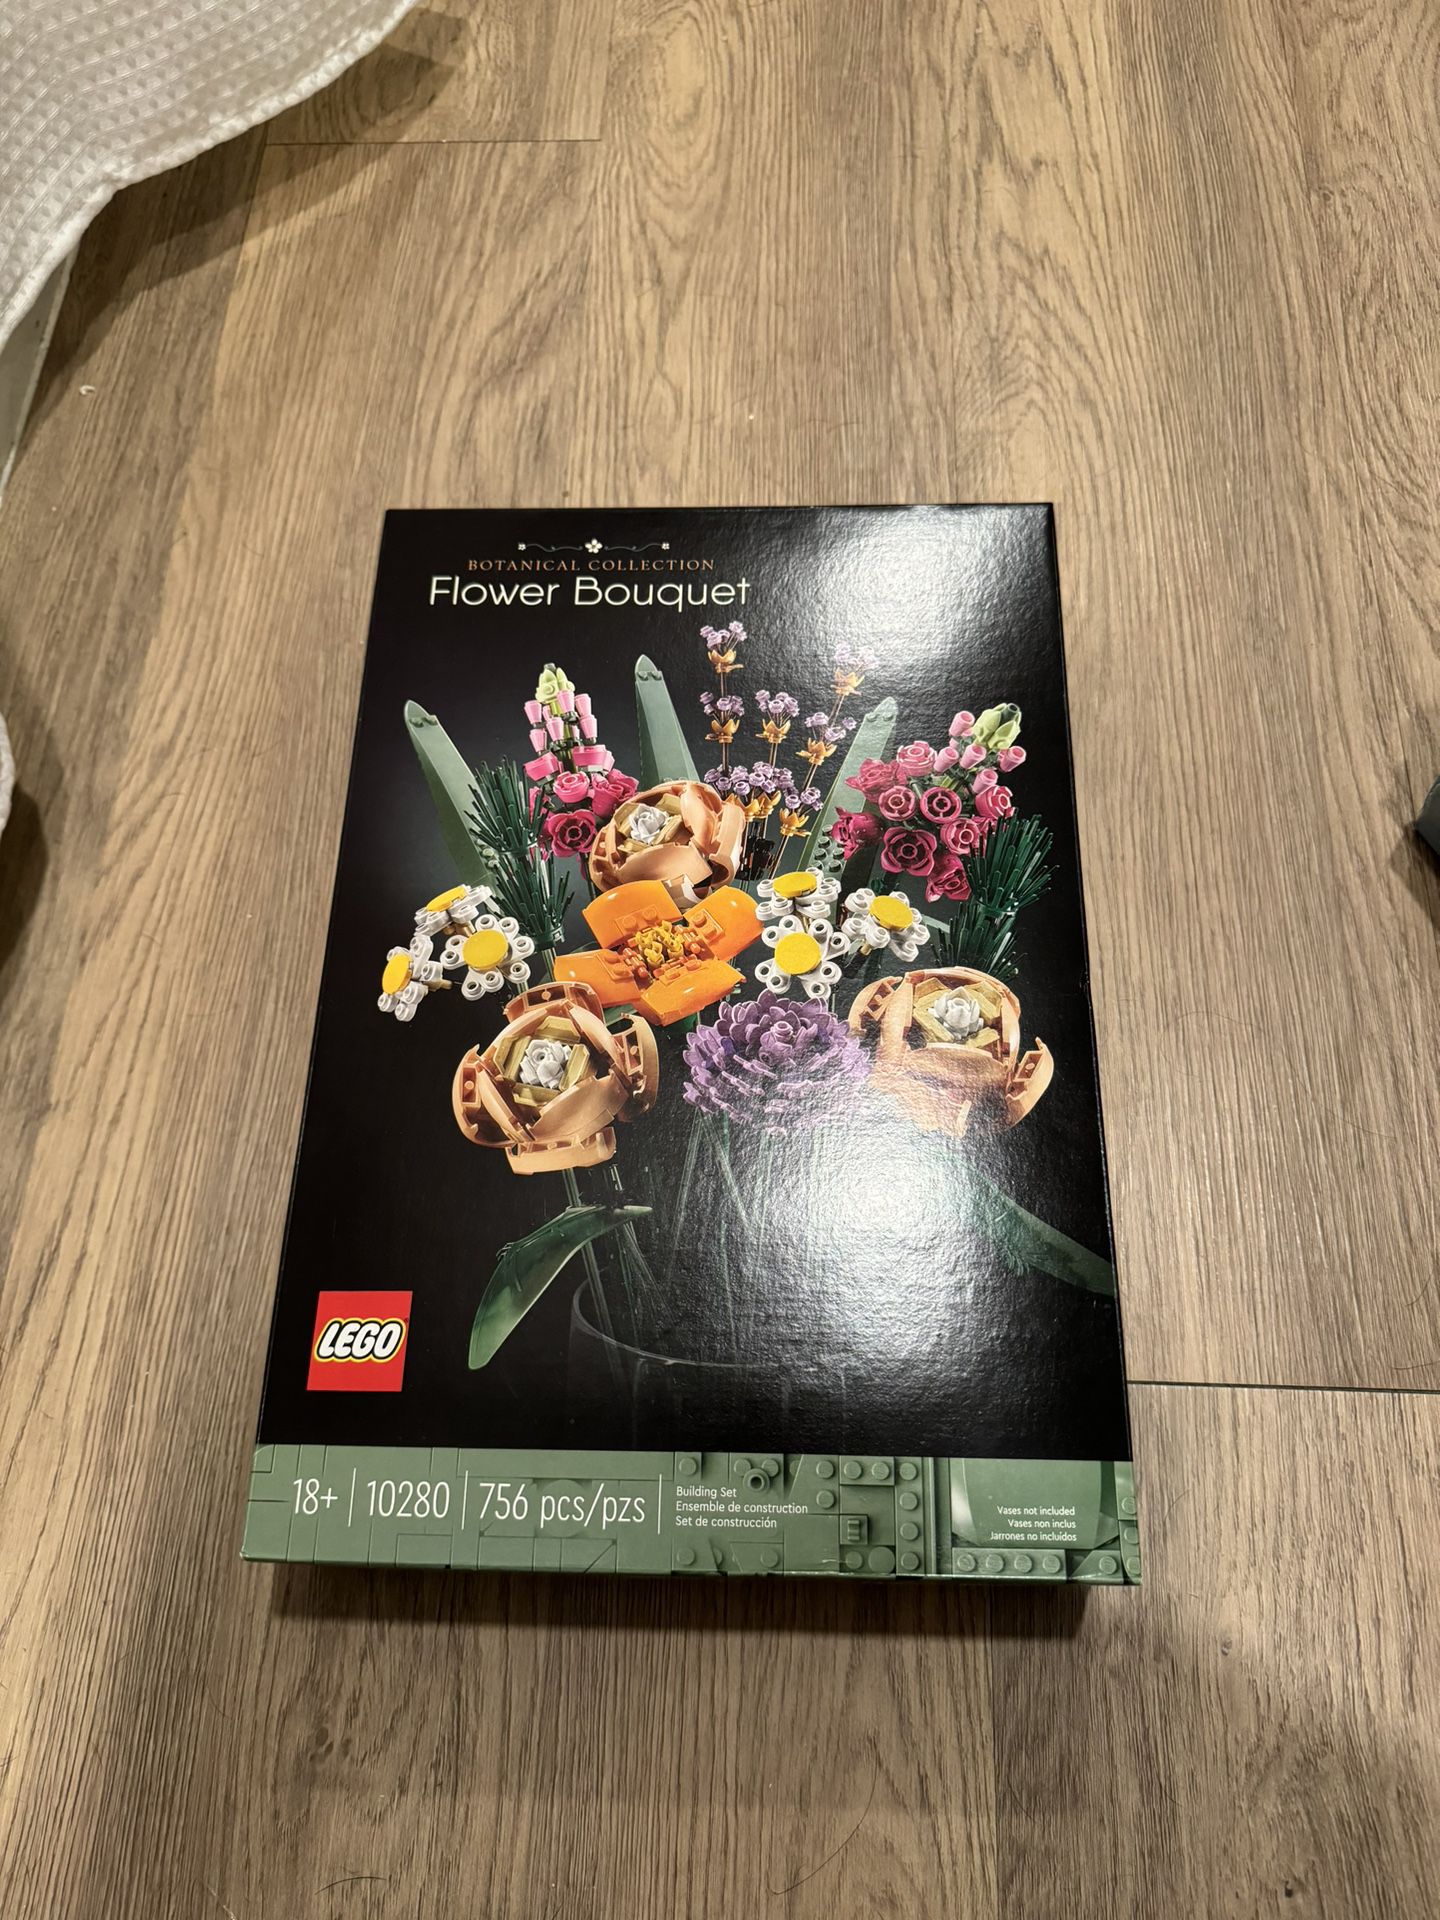 Flower Bouquet LEGO set